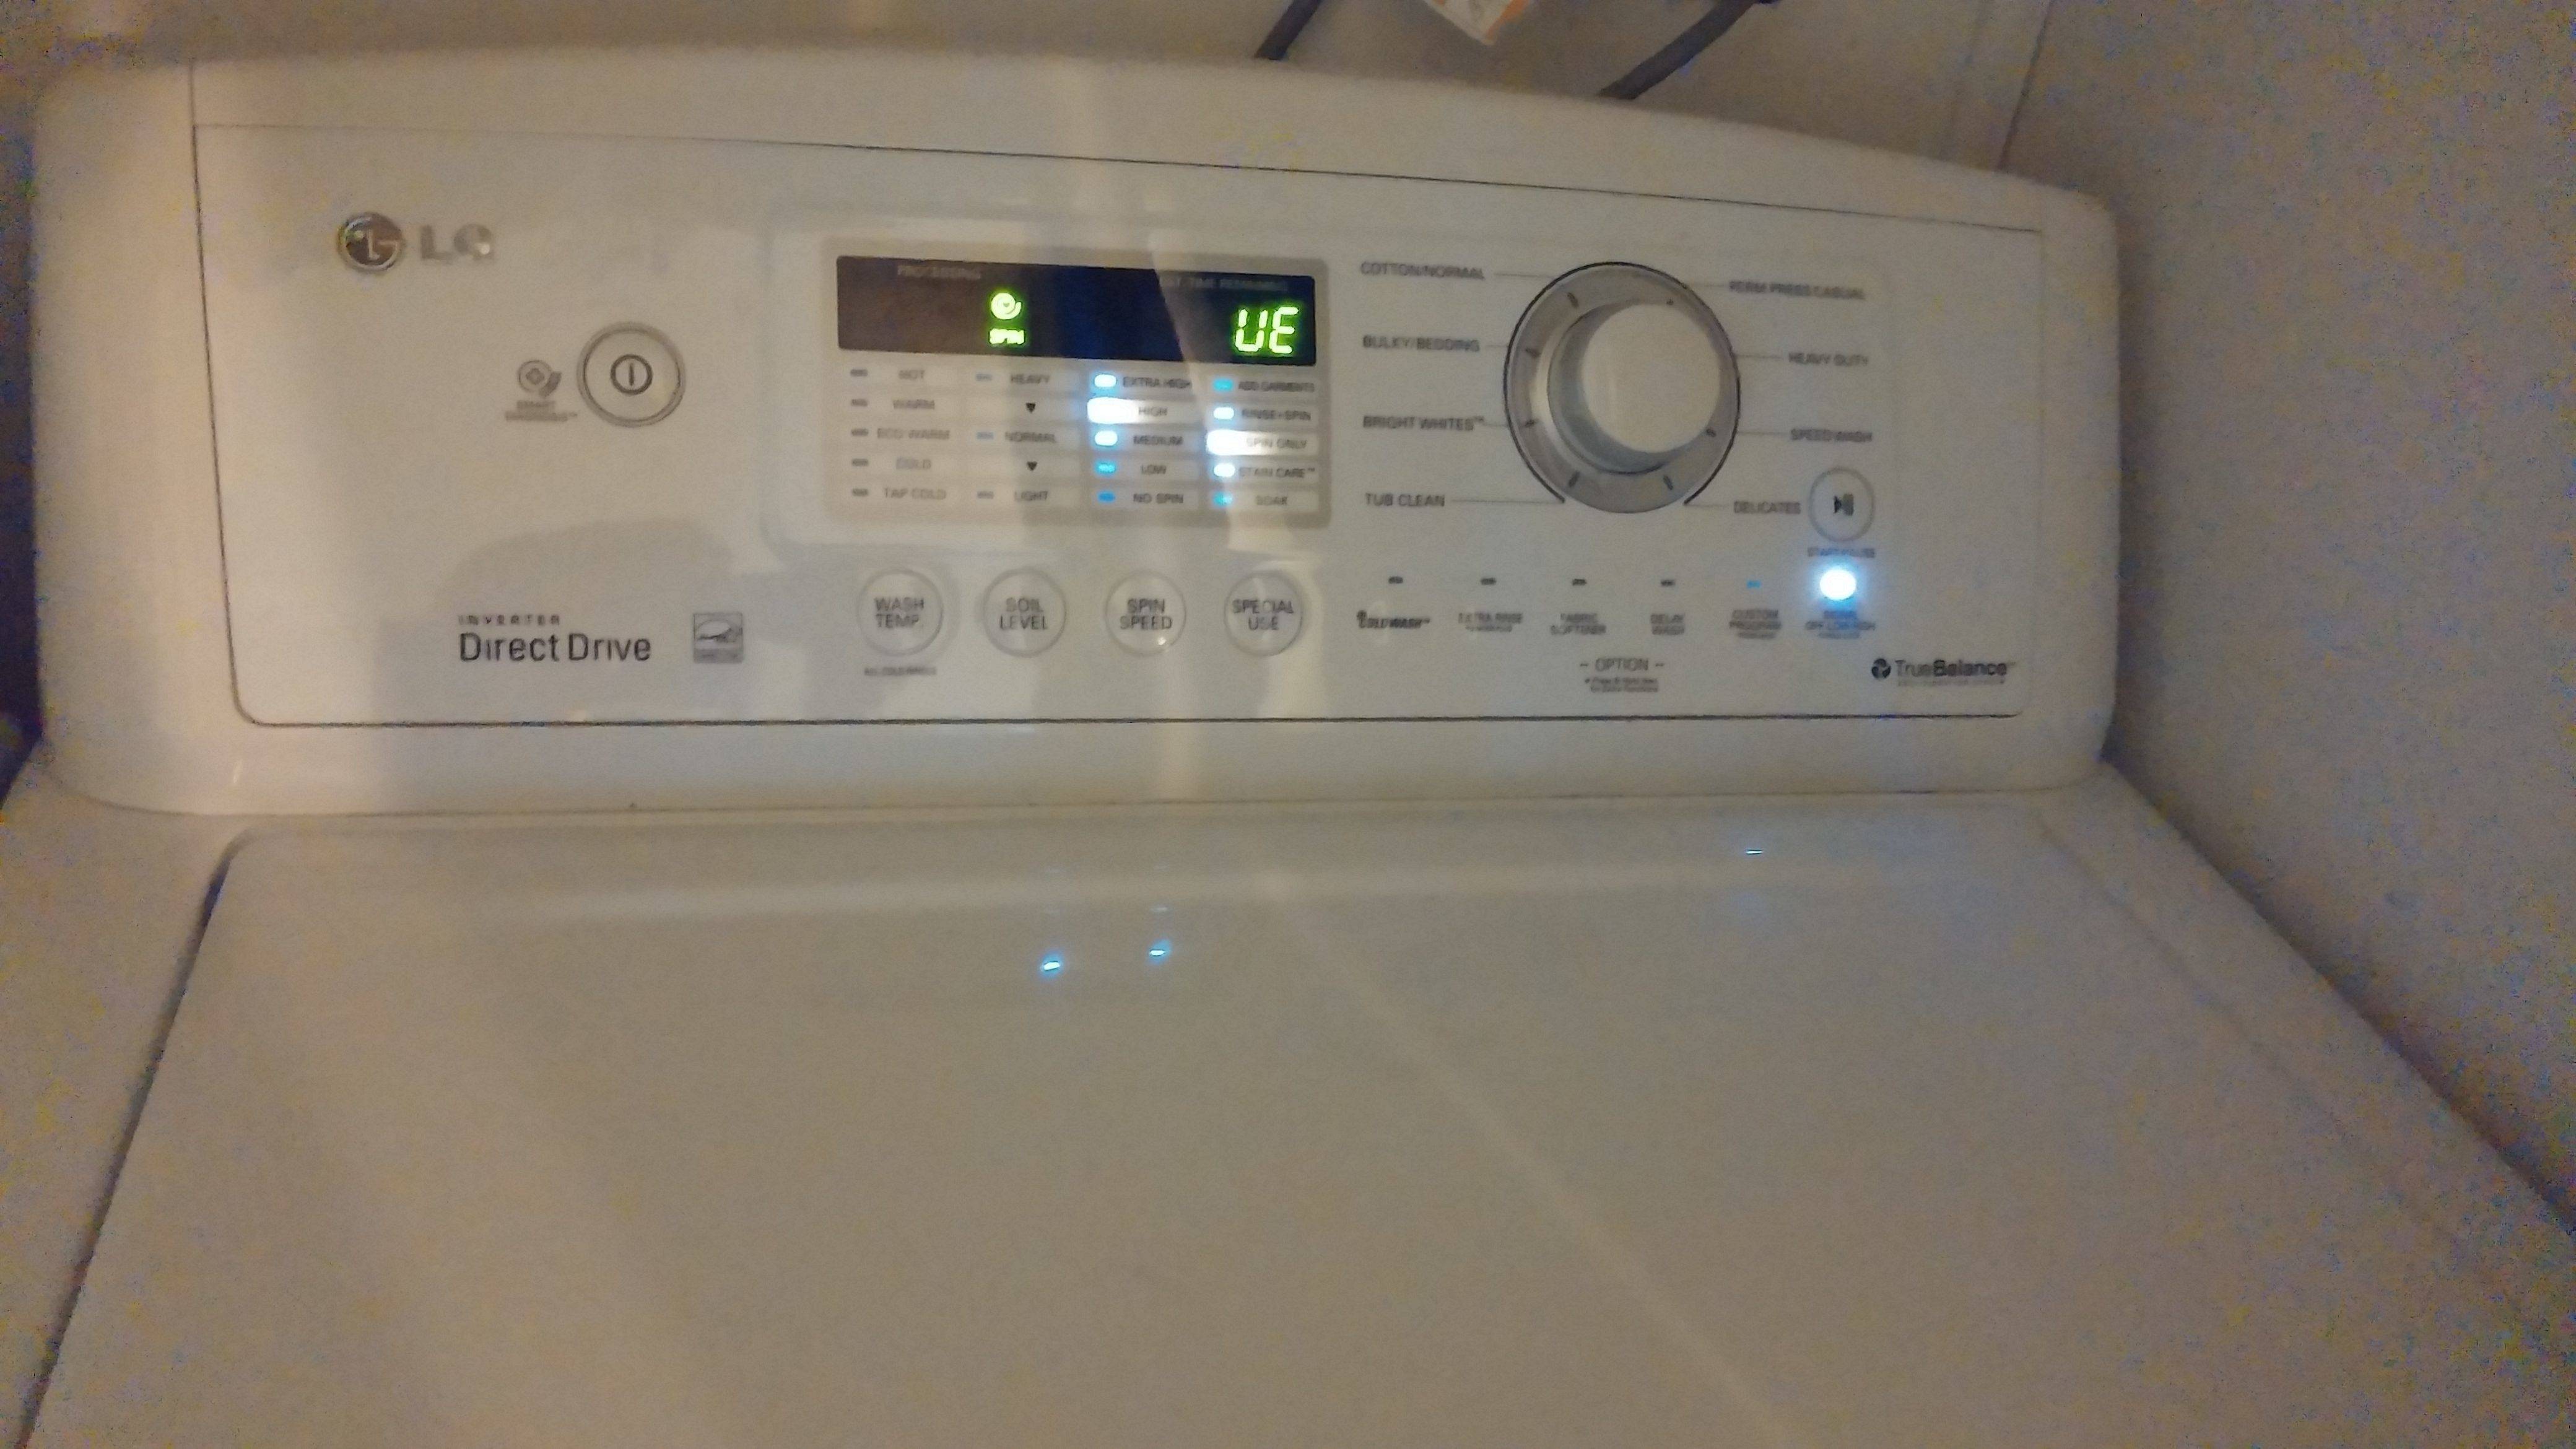 Ошибка ue на стиральной машине lg: что значит, делать, как исправить